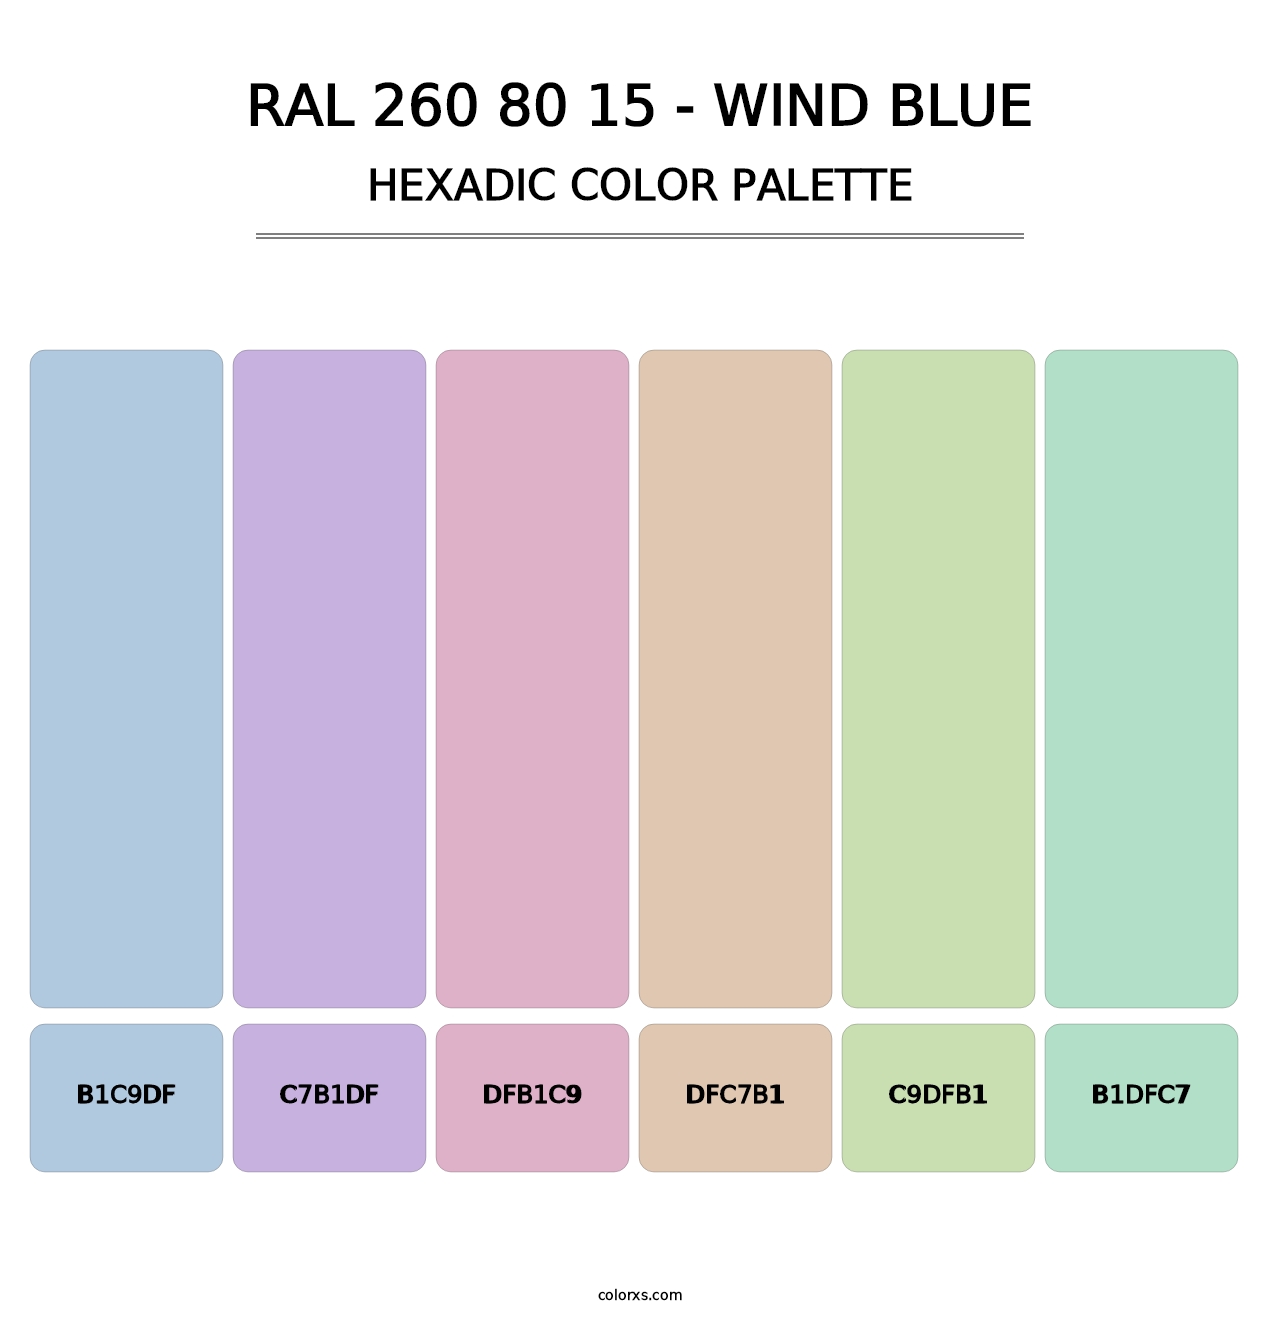 RAL 260 80 15 - Wind Blue - Hexadic Color Palette